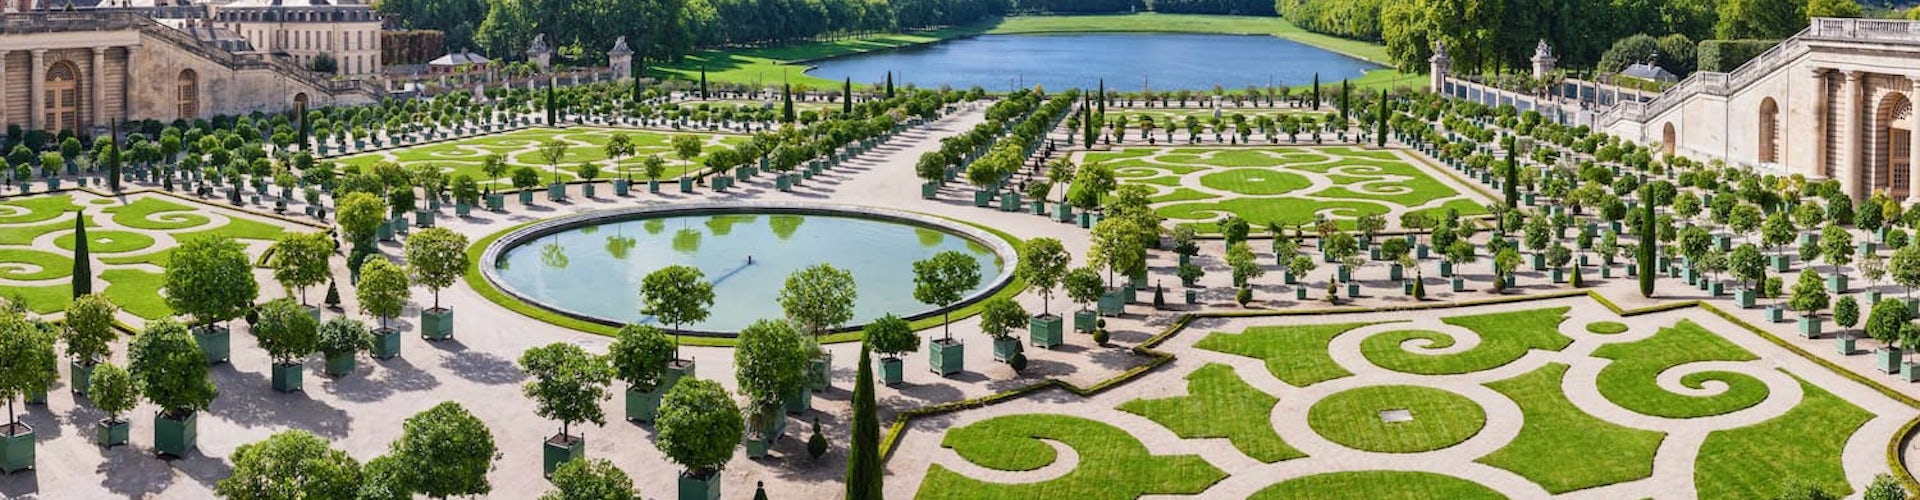 Jardines De Versalles